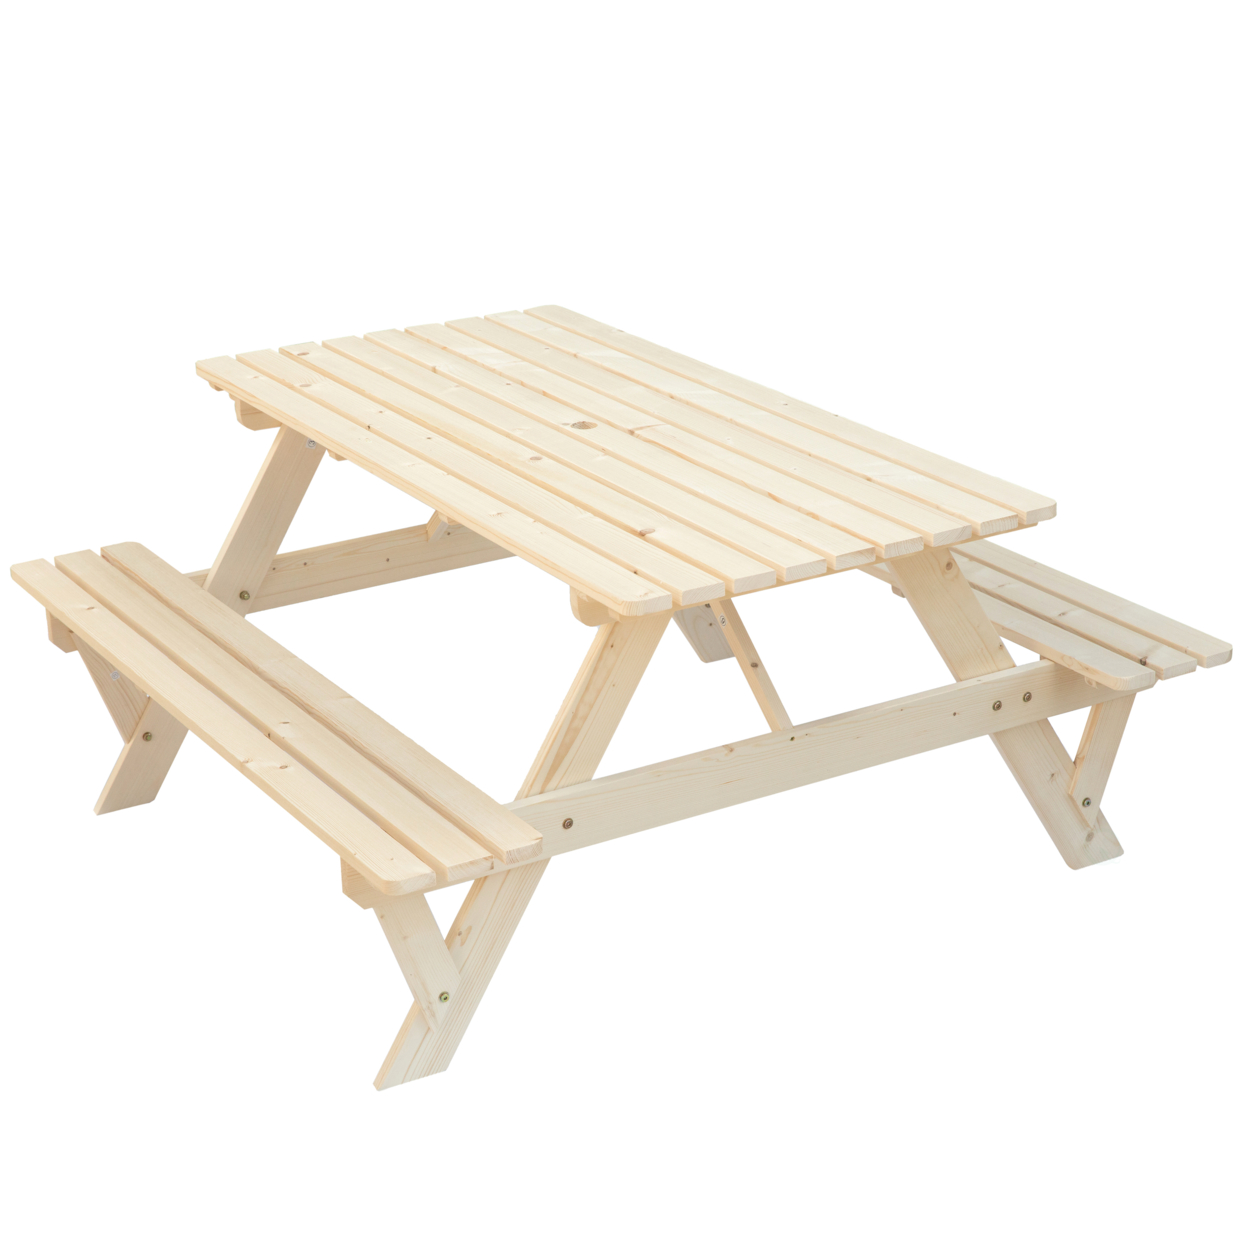 A-Frame Outdoor Patio Deck Garden Picnic Table - natural